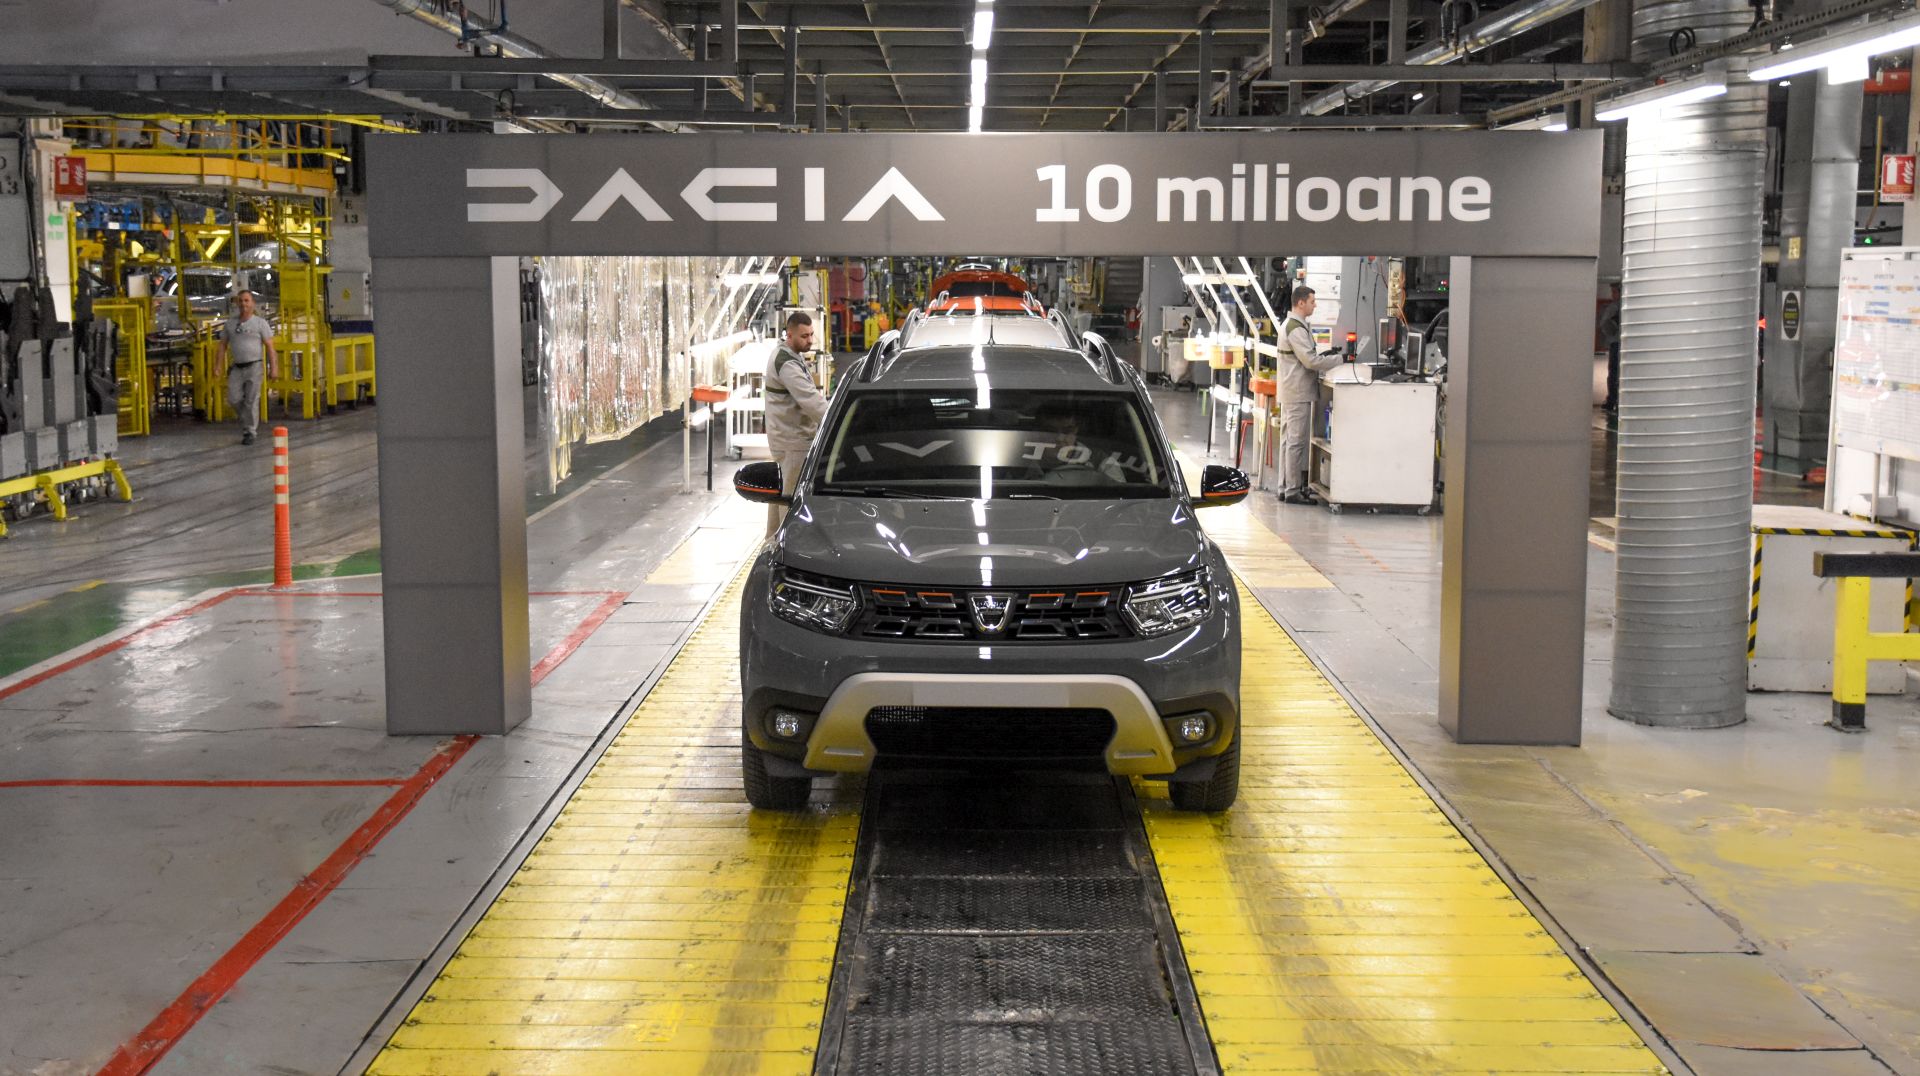 U 54 godine Dacia proizvela 10 milijuna automobila, a pola od toga u posljednjih 8 godina